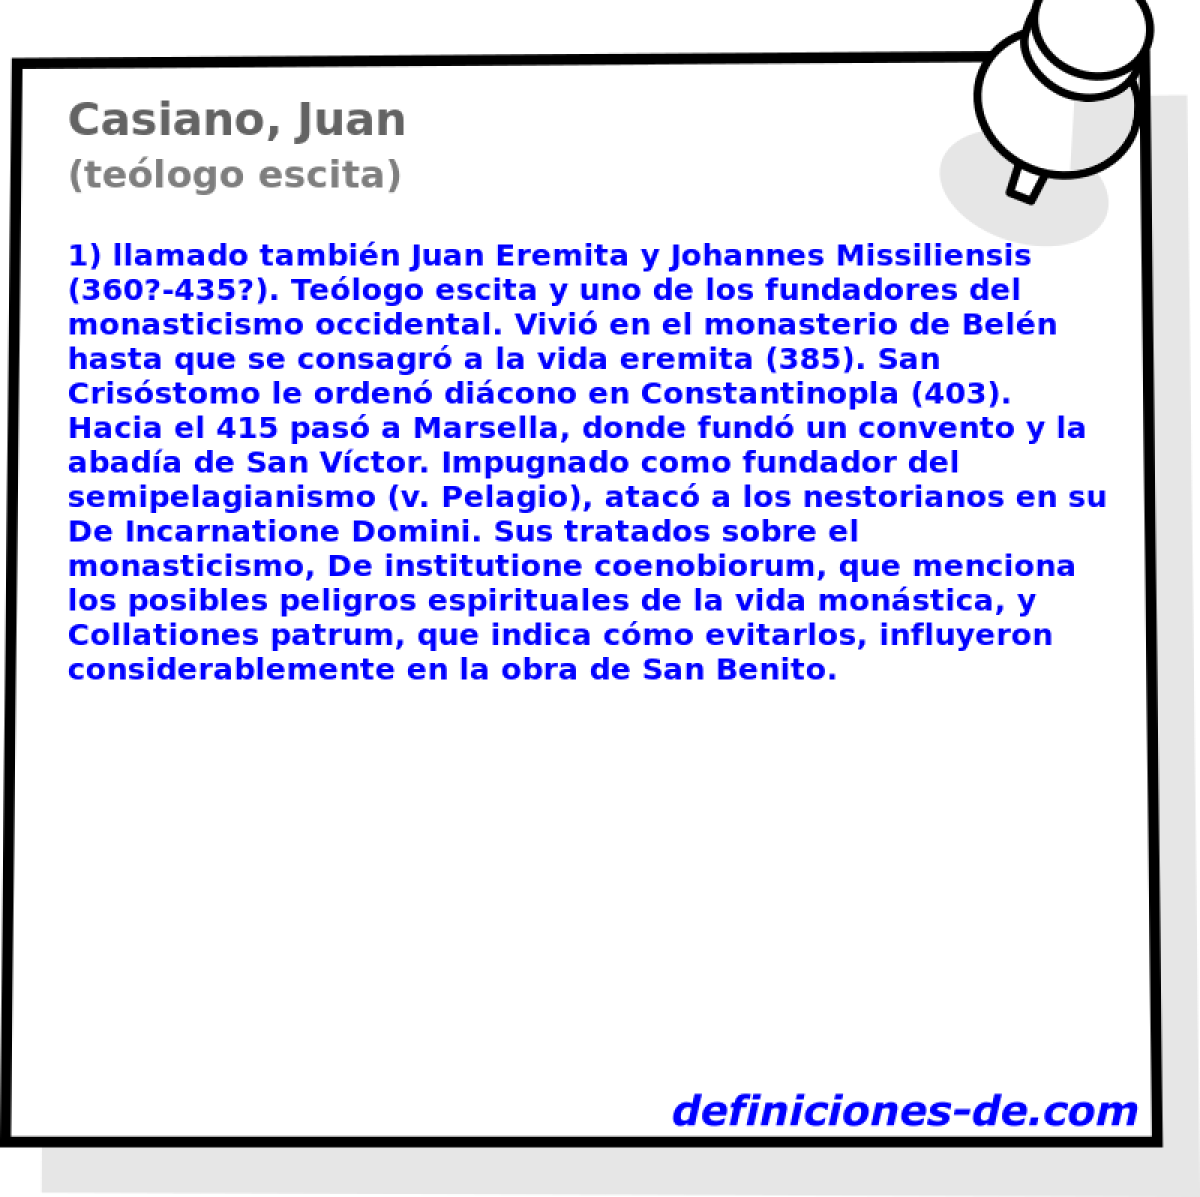 Casiano, Juan (telogo escita)